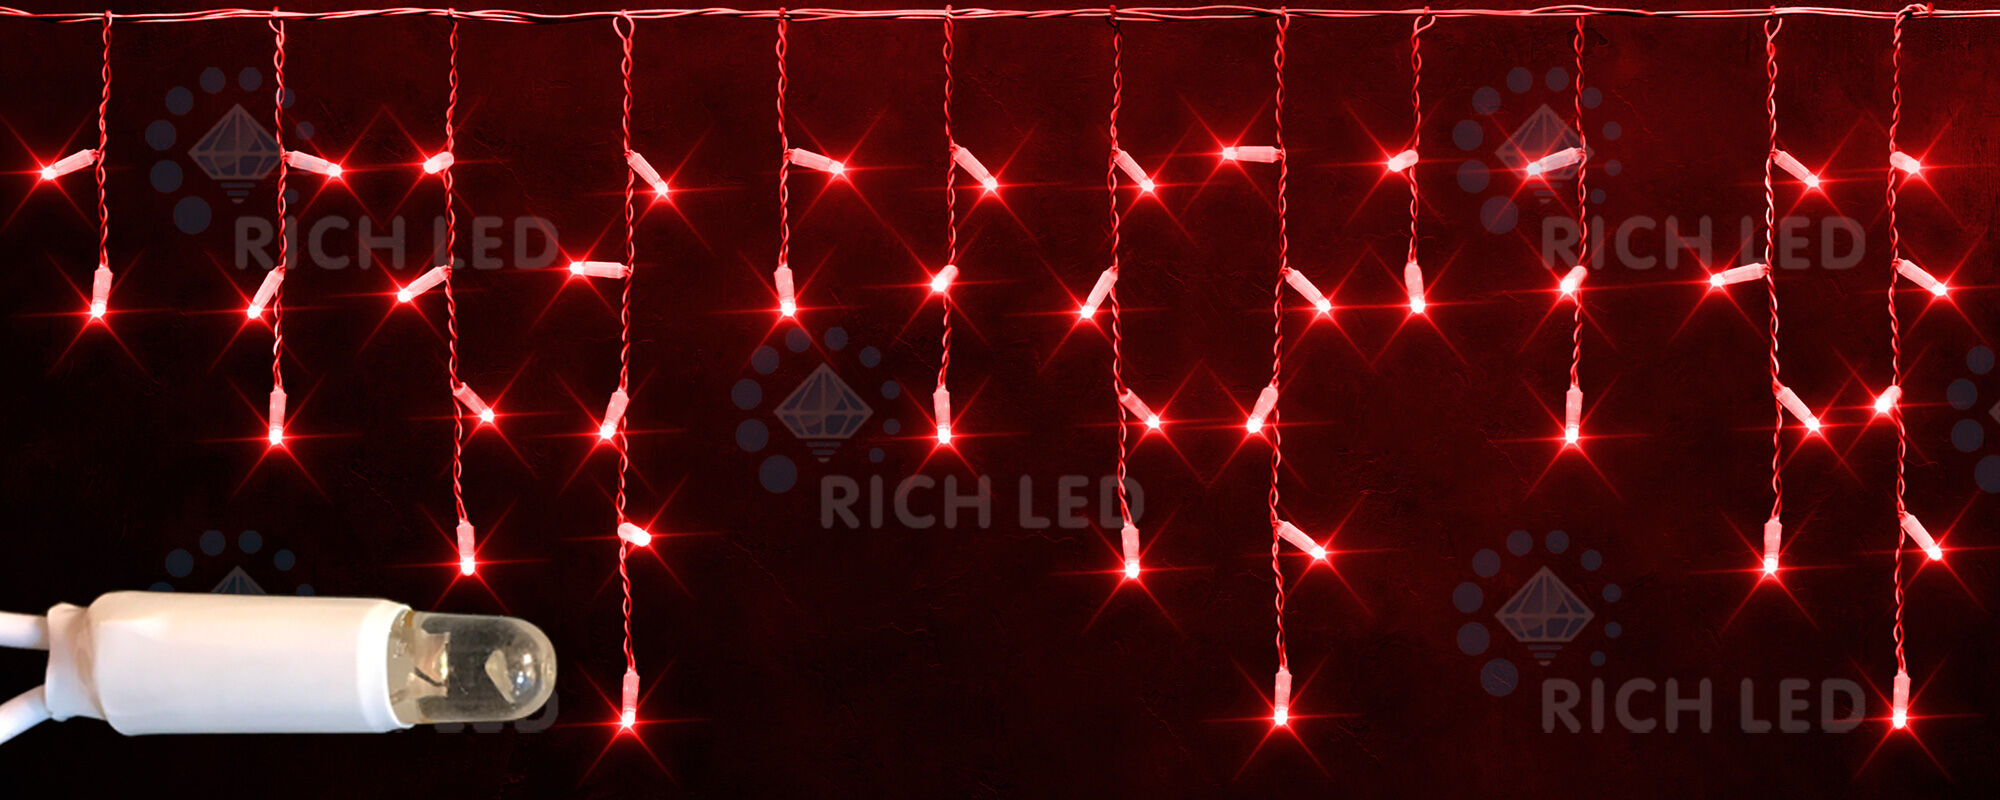 Светодиодная бахрома Rich LED, 3*0.5 м, влагозащитный колпачок, красная, прозрачный провод, RICH LED